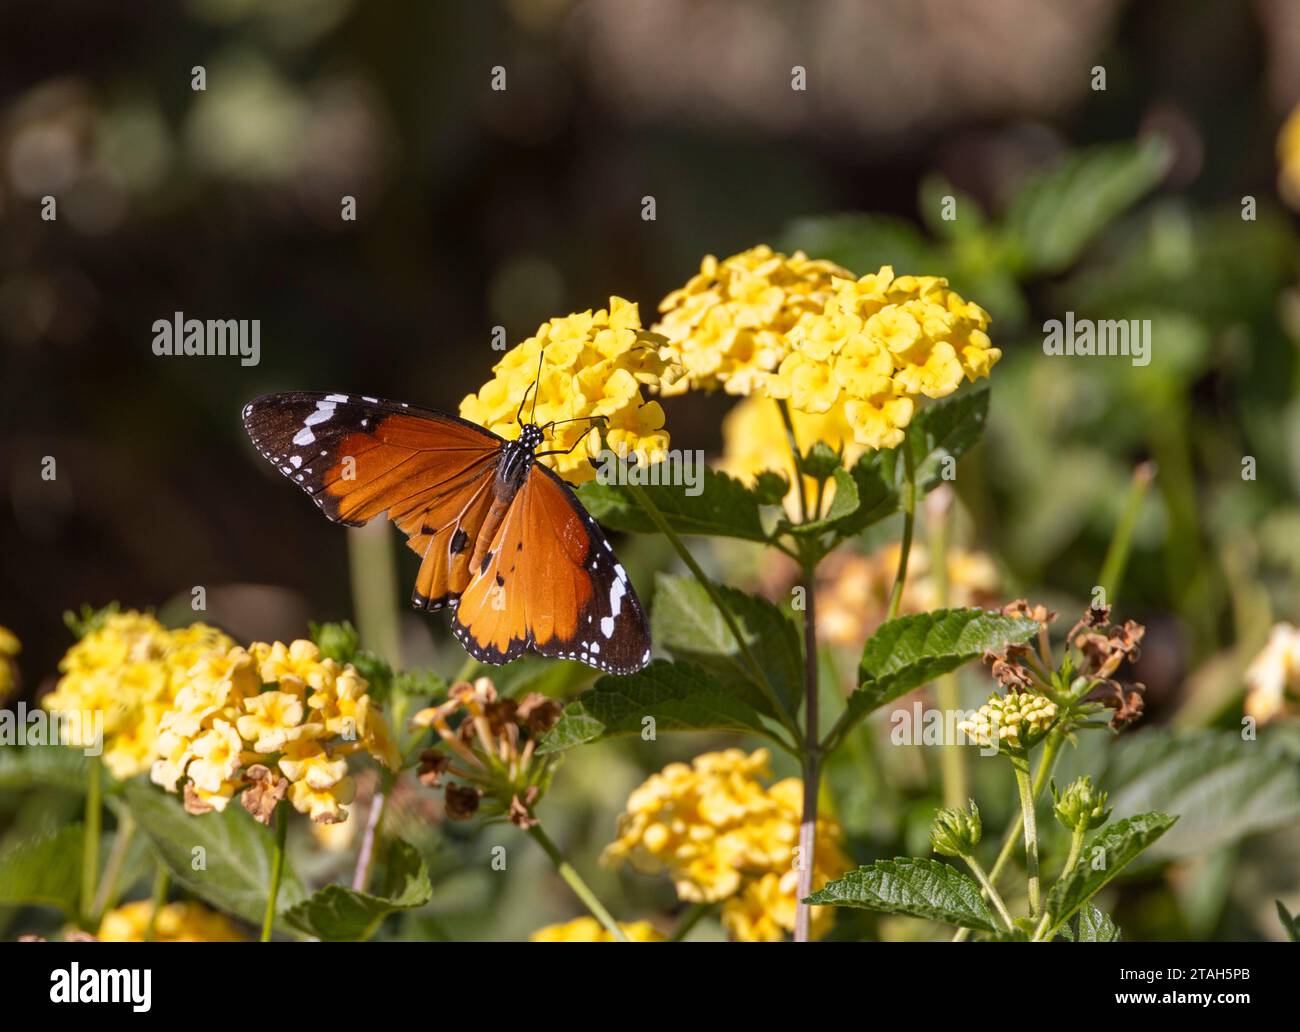 Danaus chrysippus, également connu sous le nom de tigre de plaine, reine africaine ou papillon monarque africain sur fleurs jaunes, Louxor, Égypte Banque D'Images